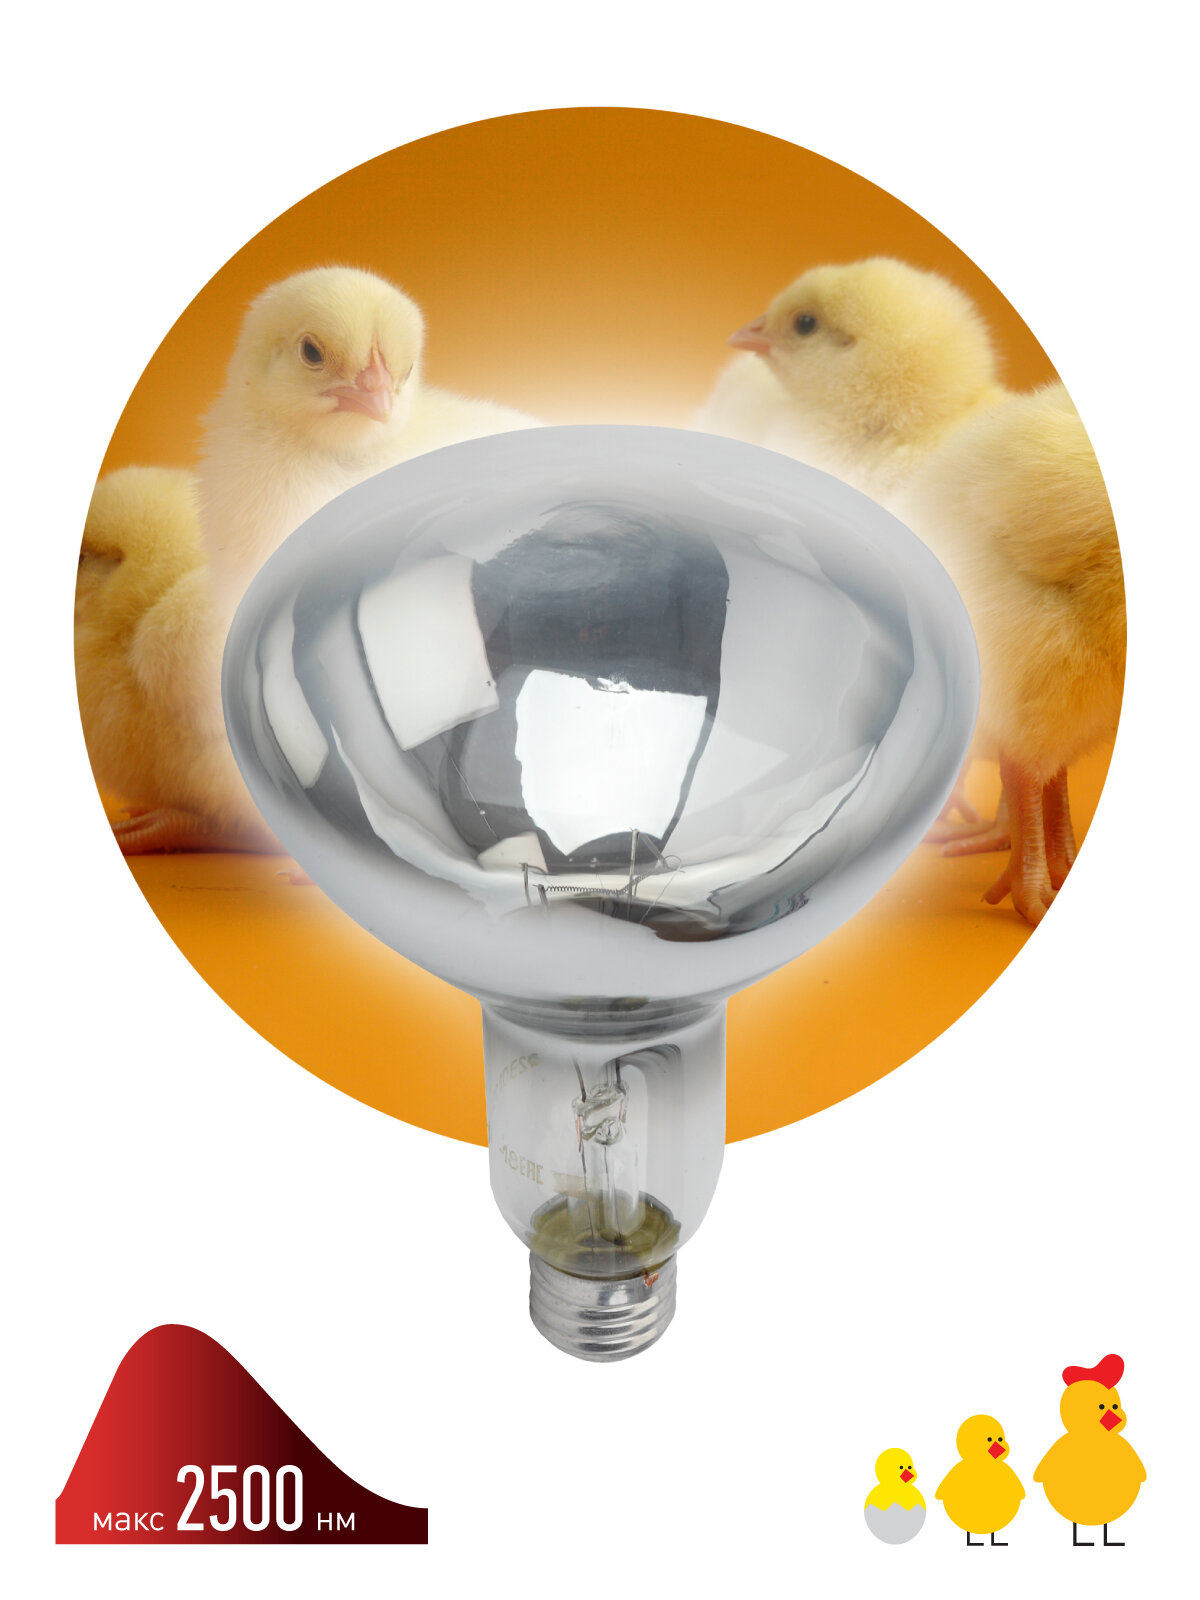 Инфракрасная лампа ЭРА ИКЗ 220-250 R127 E27, кратность 1 шт, для обогрева животных и освещения, 250 Вт, Е27 арт. Б0055440 (1 шт.)